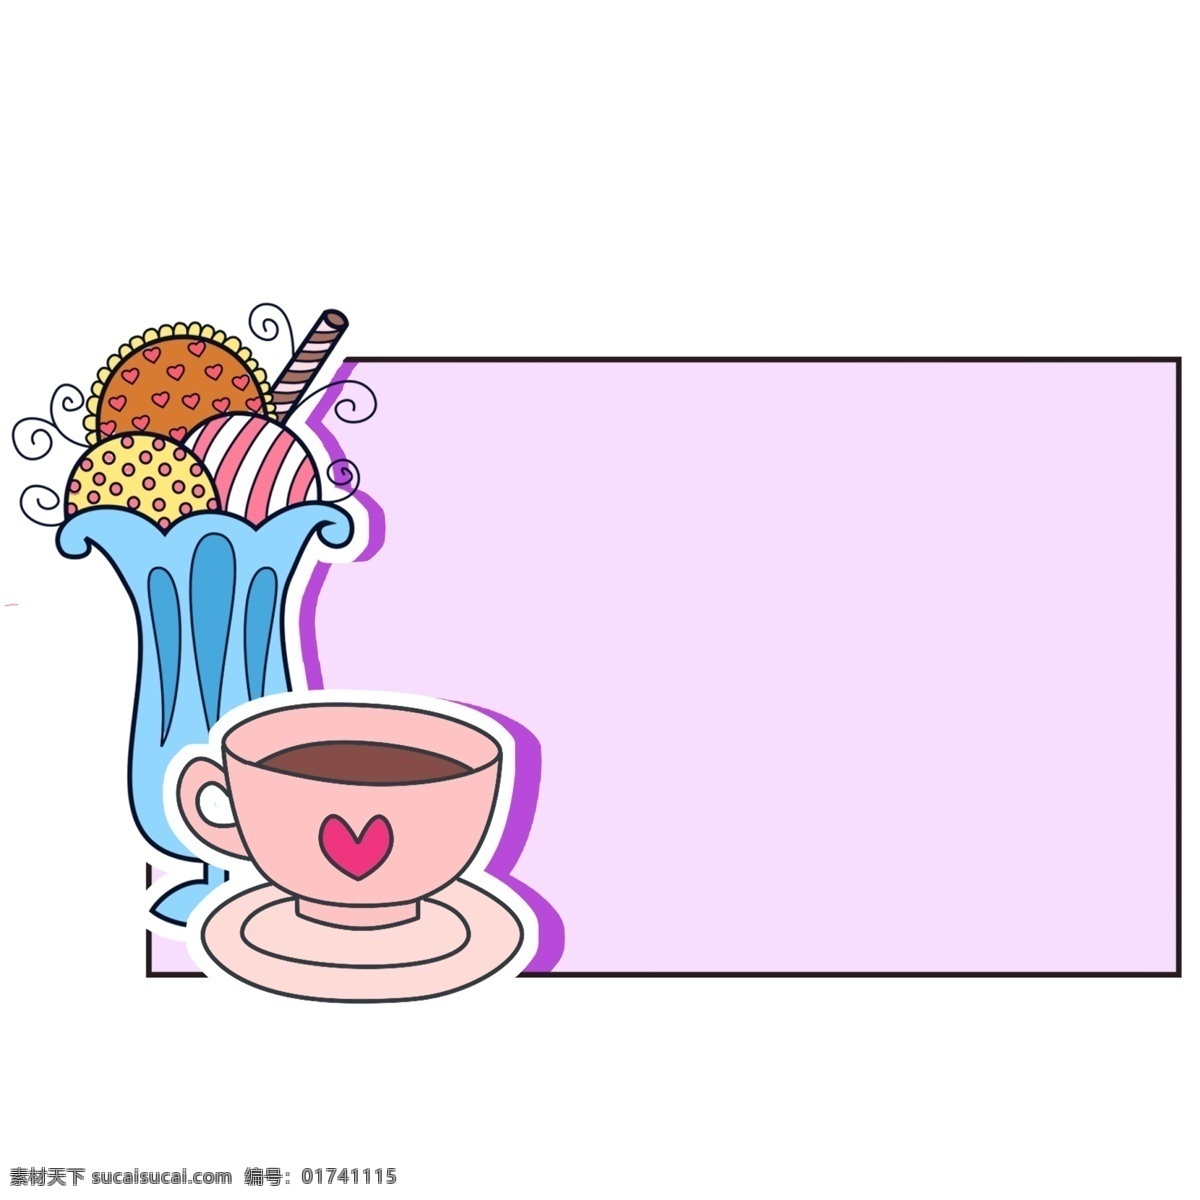 咖啡 美食 边框 插画 爱心咖啡 紫色的边框 美食边框 冰淇淋边框 立体边框 边框装饰 边框插画